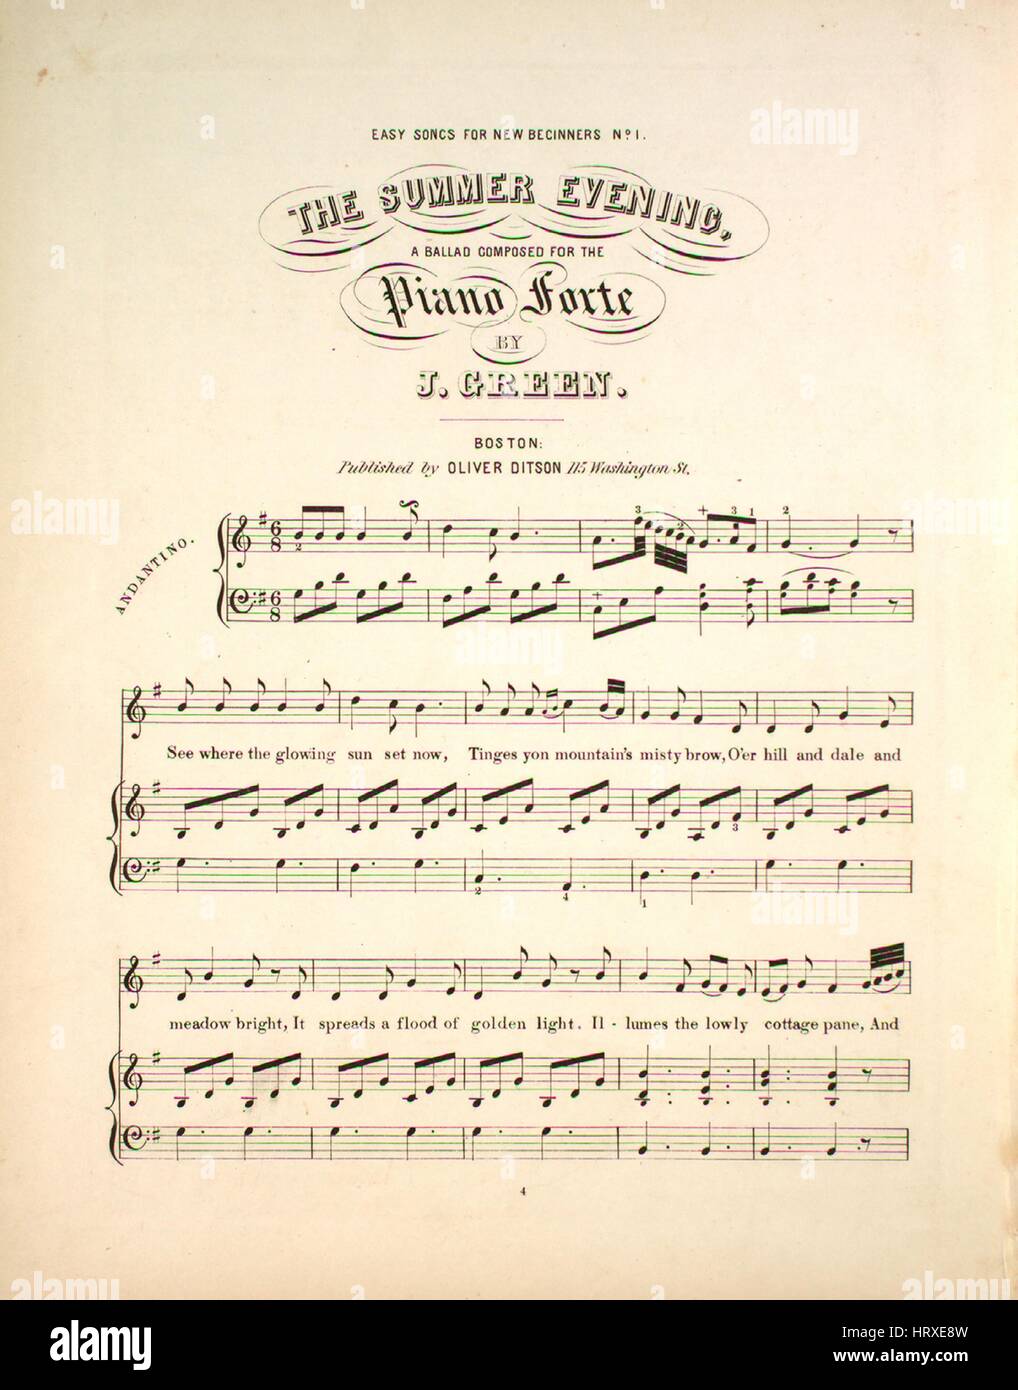 Imagen de cubierta de partituras de la canción 'Easy Canciones para los  principiantes no 1 la noche de verano", con notas de autoría original  leyendo 'Una balada compuesta para piano Forte por